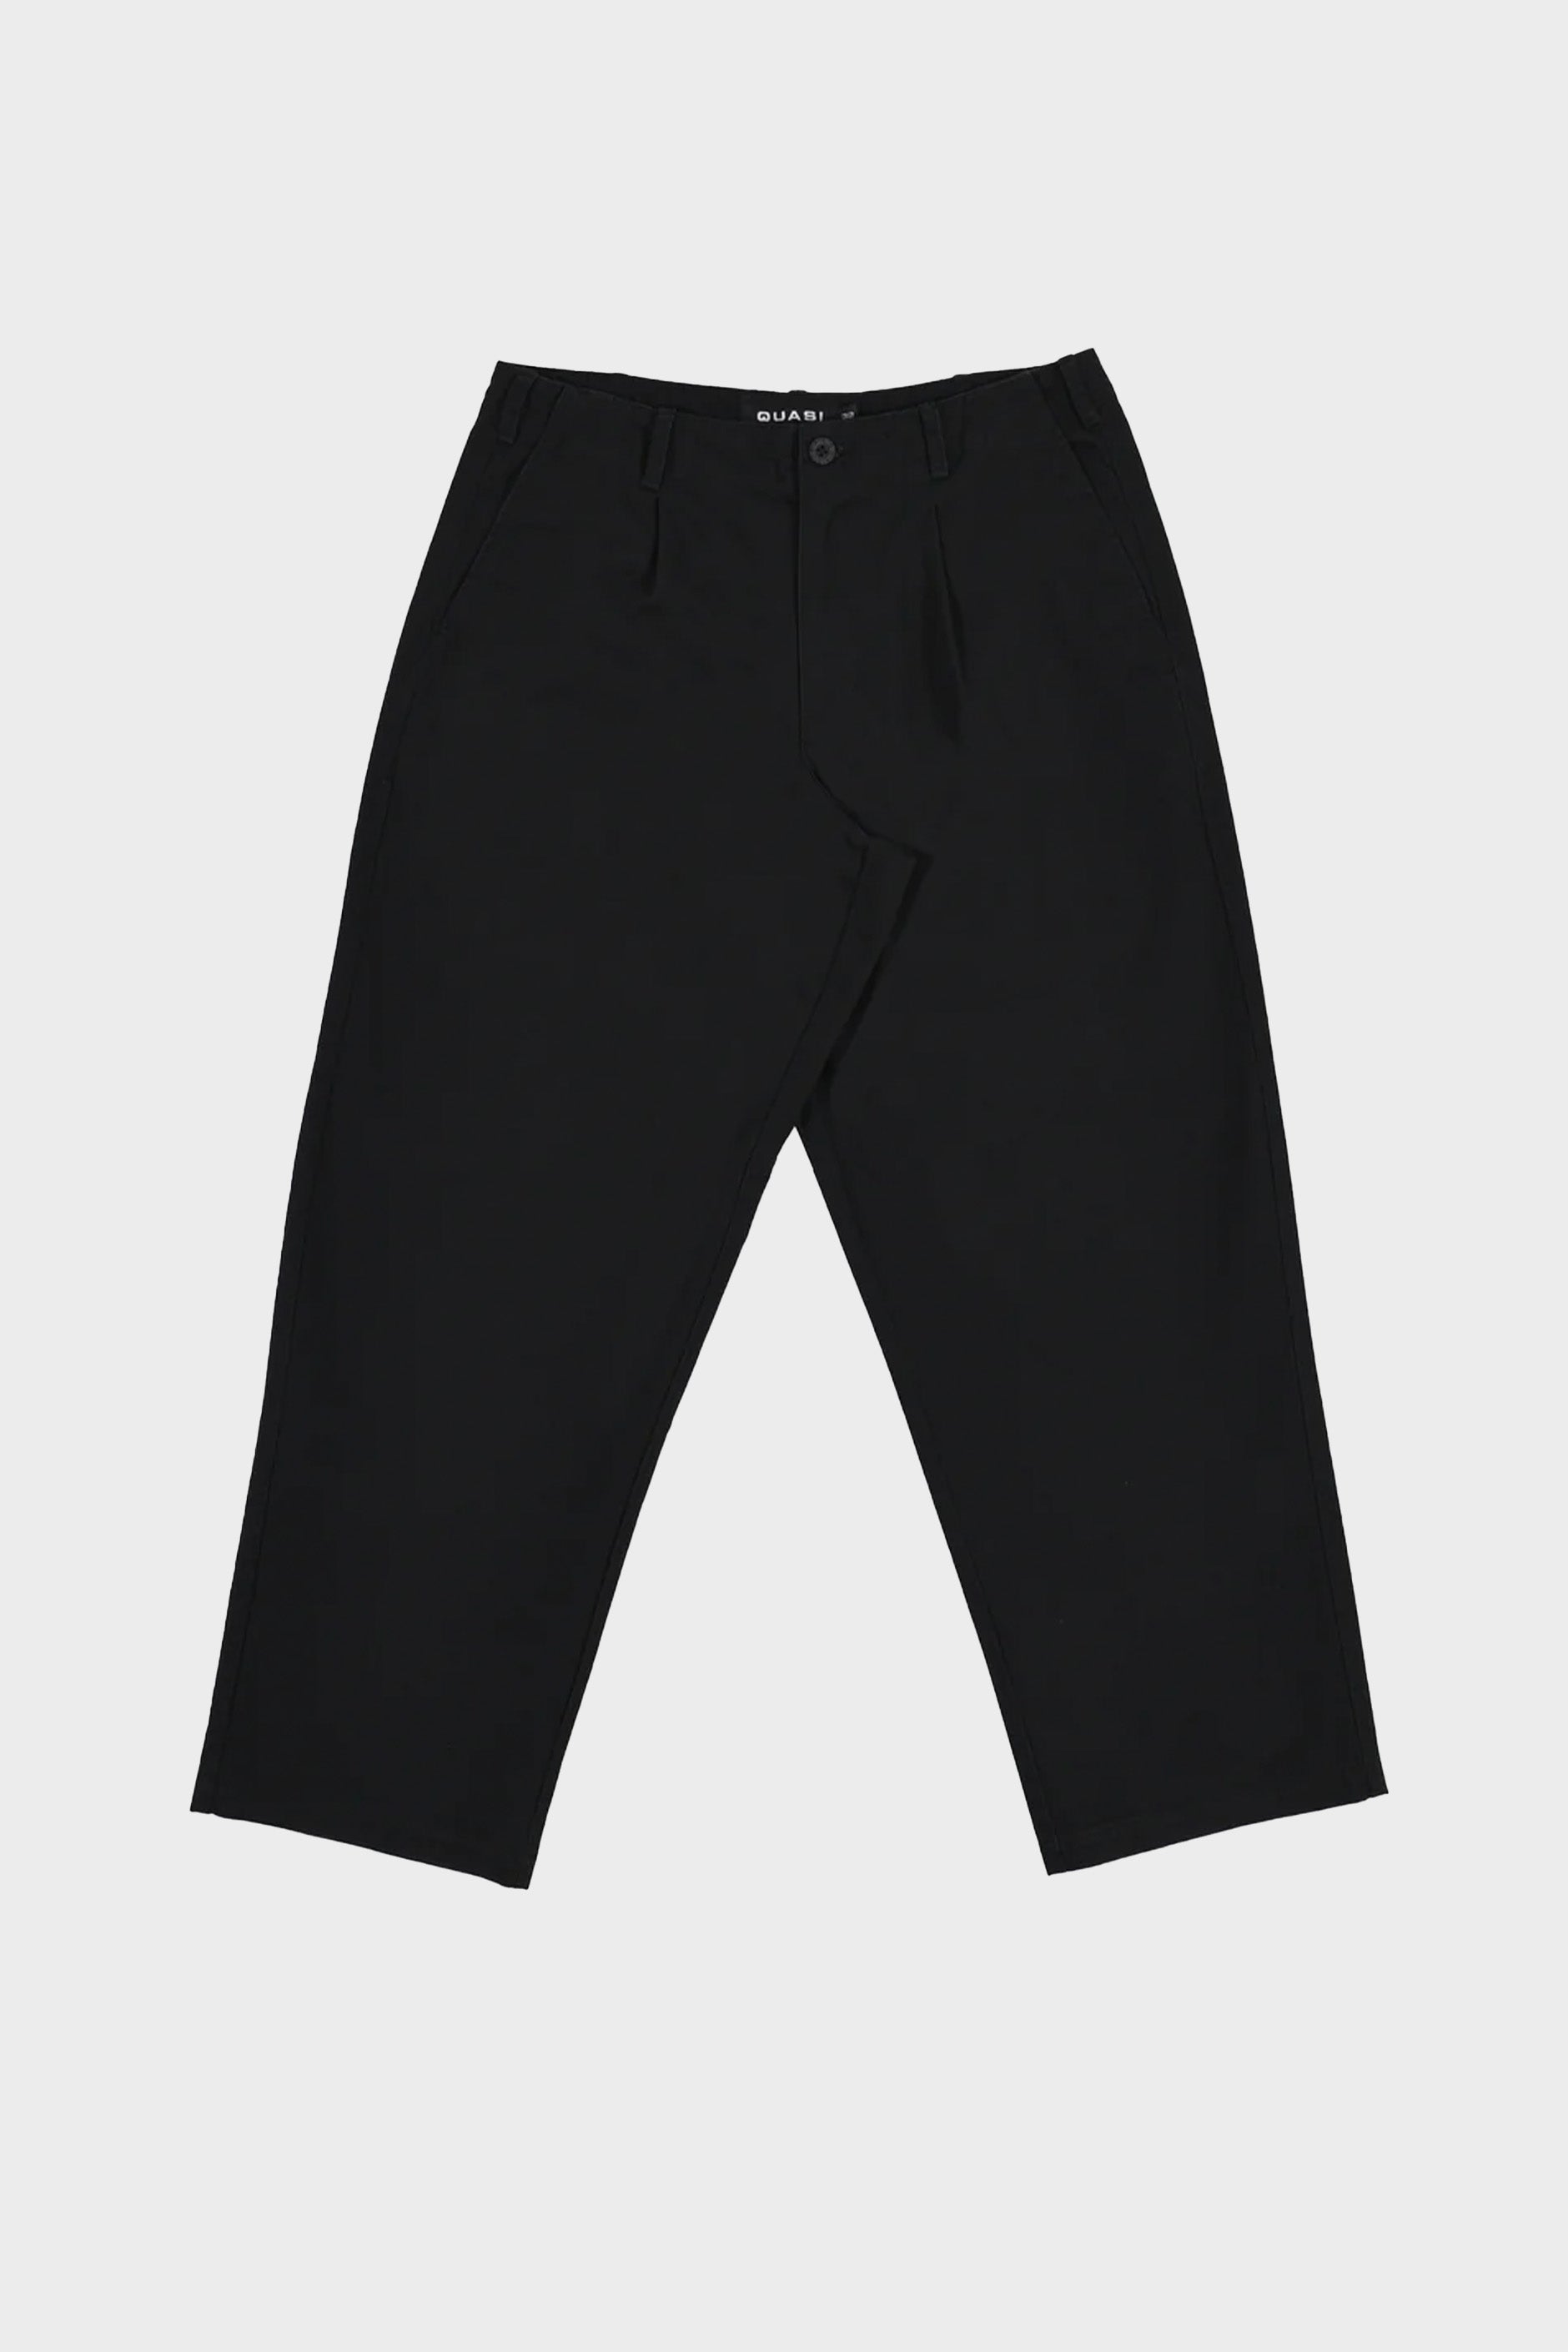 Selectshop FRAME - QUASI Warren Trouser Pant Bottoms Concept Store Dubai